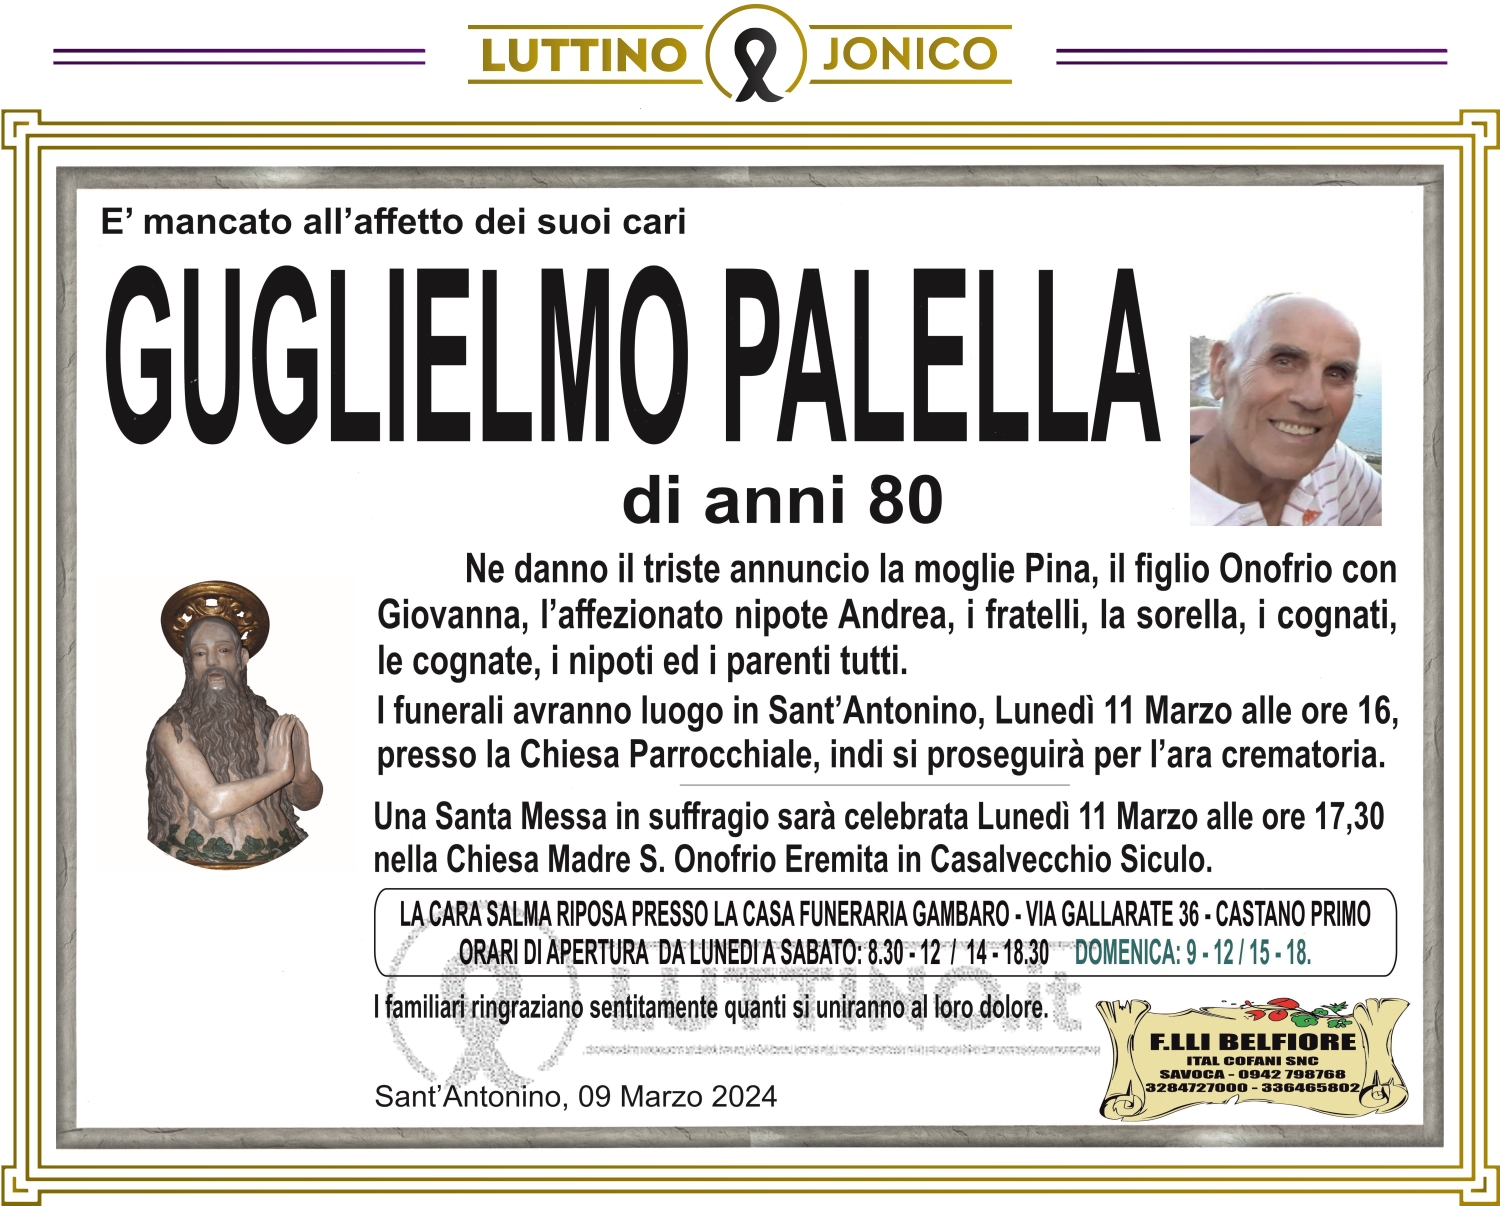 Guglielmo Palella